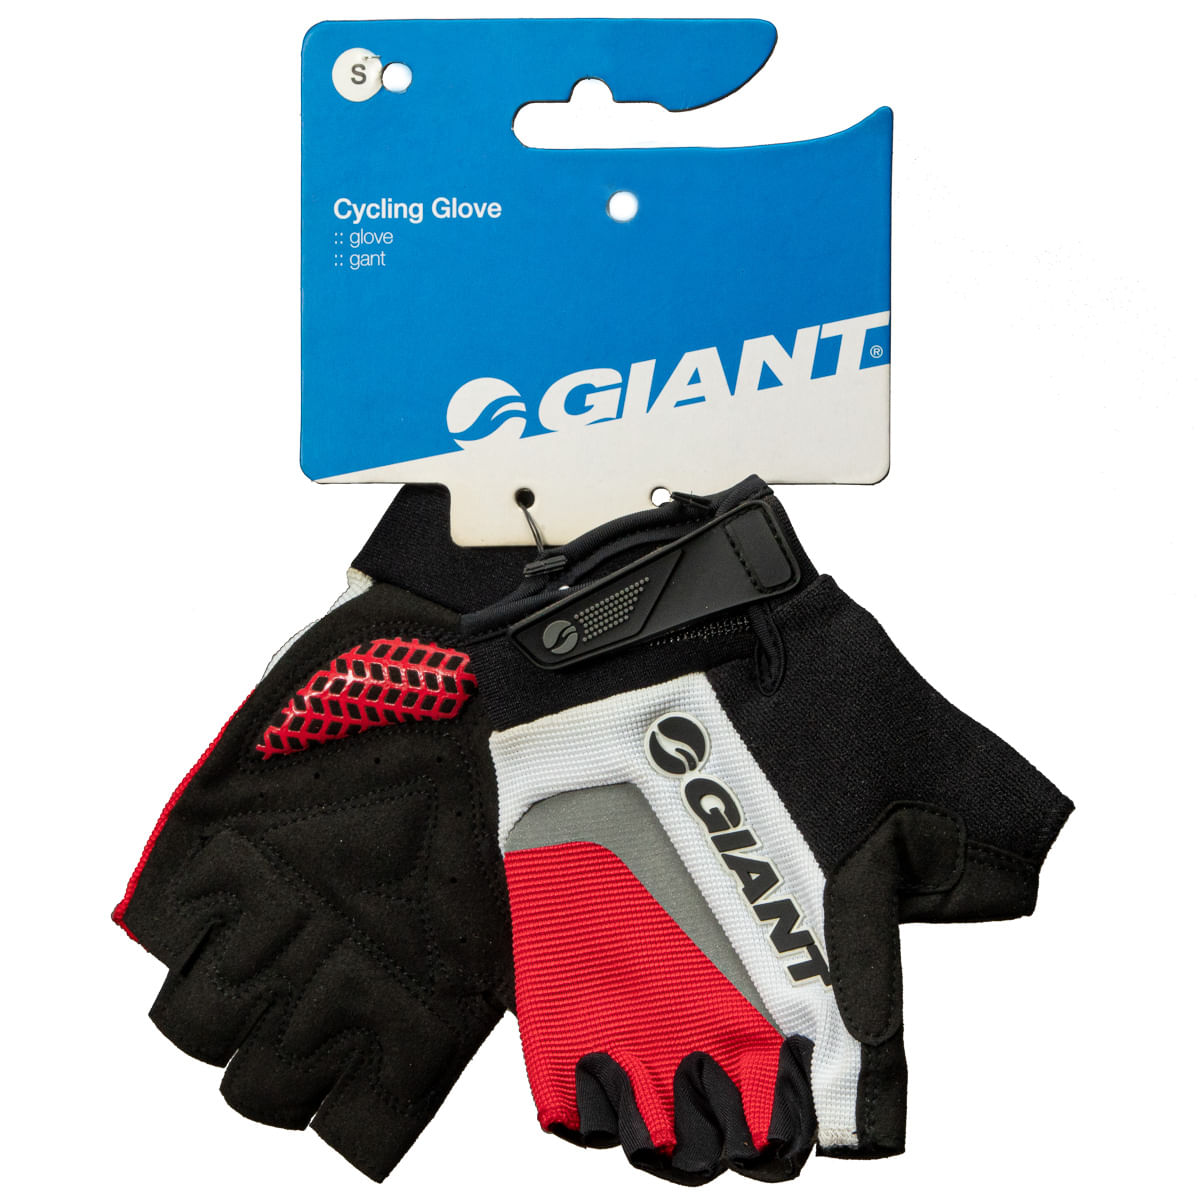 Tipos de guantes para ciclismo: ¿cuáles elegir? – Sanferbike